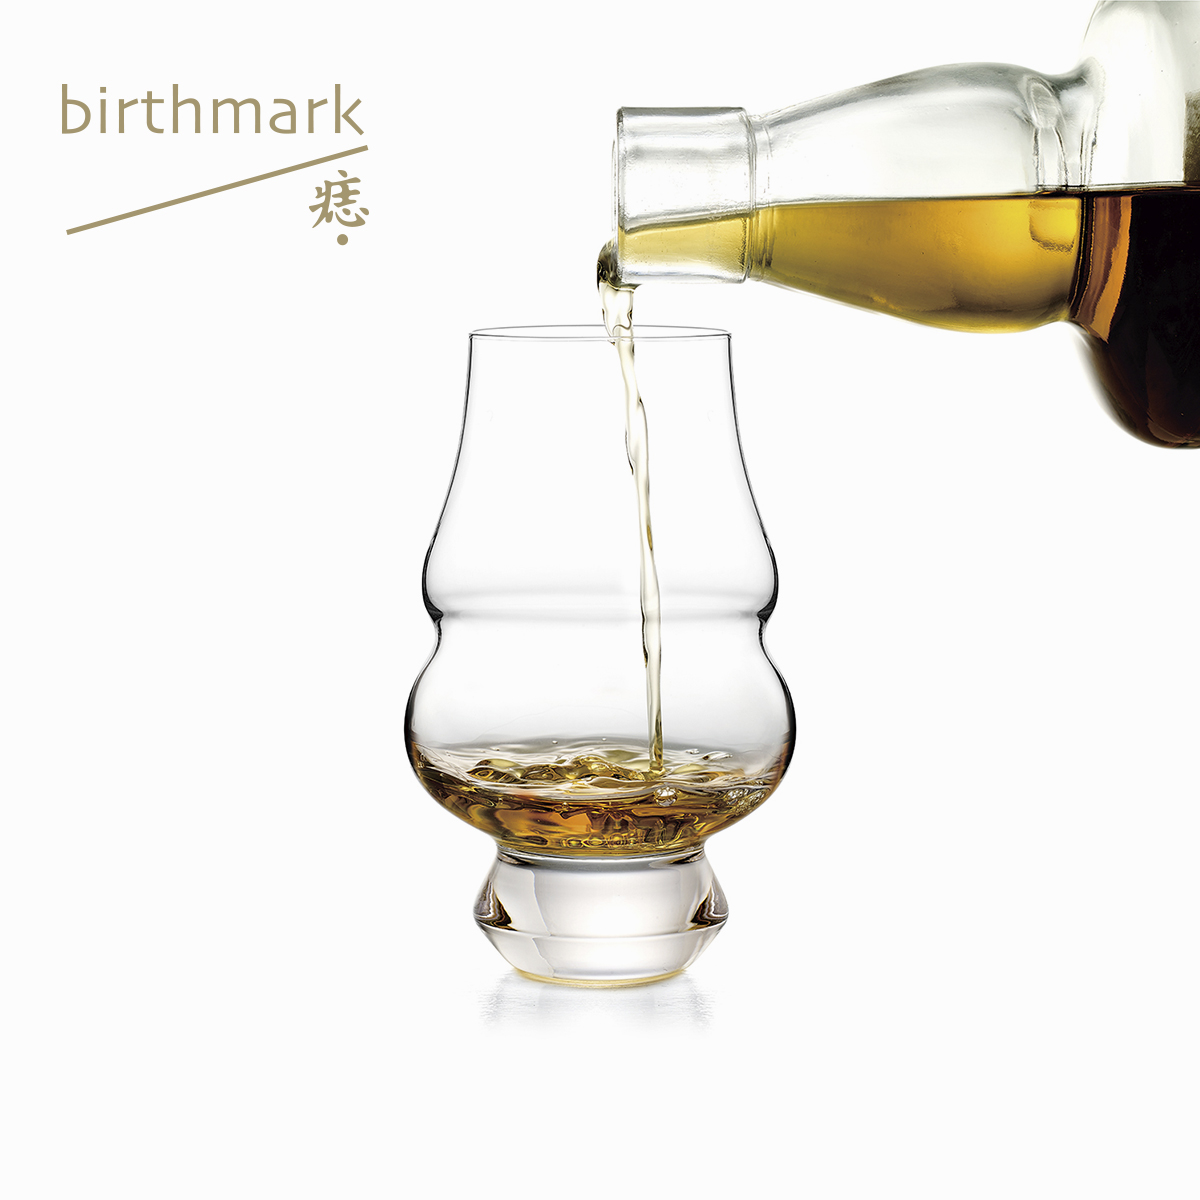 月盏 月球杯 双腹杯 威士忌杯烈酒杯玻璃杯 创意礼物 痣birthmark - 图2